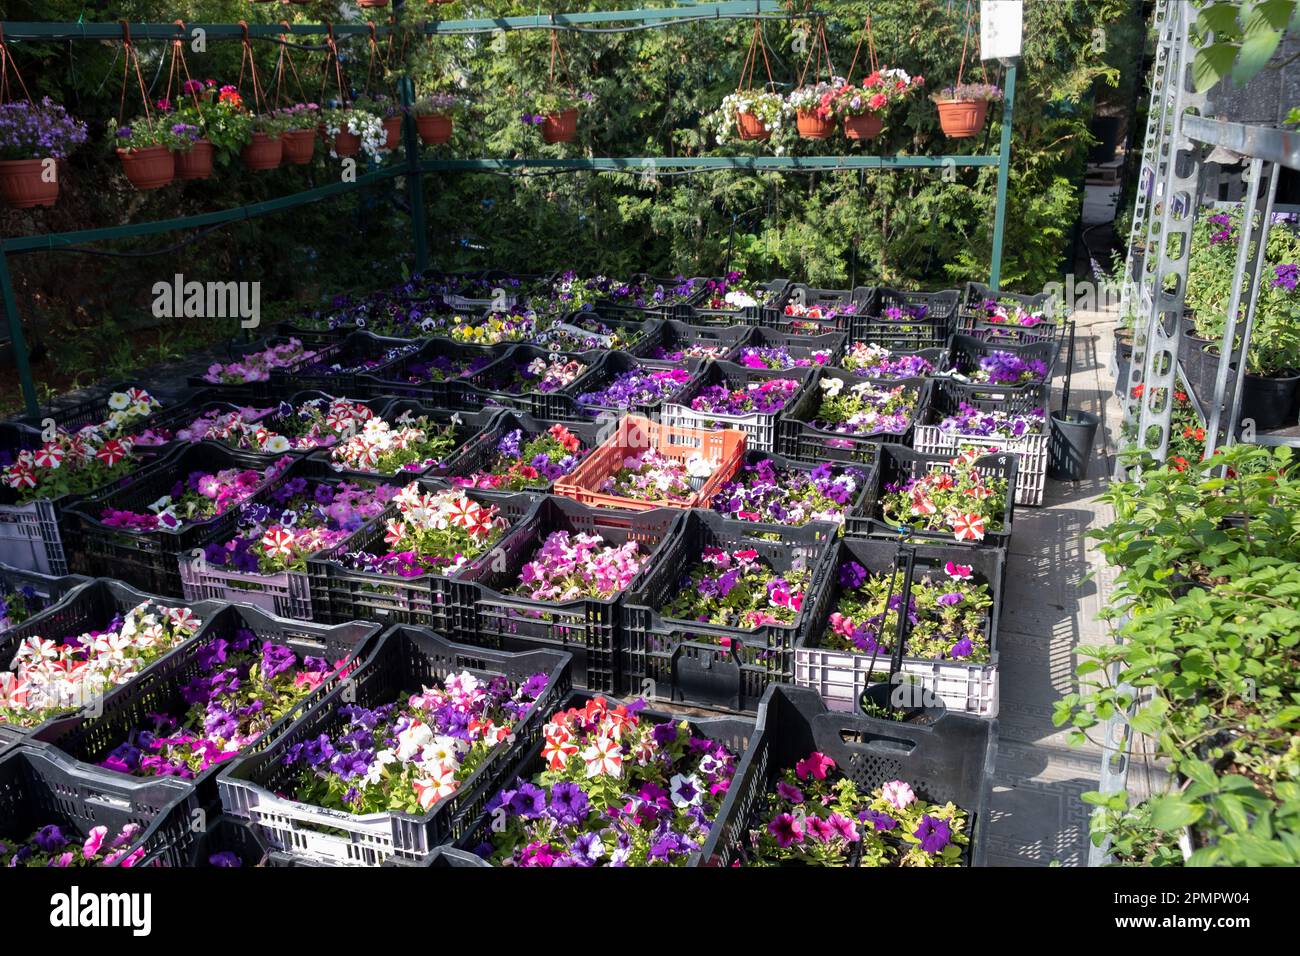 Vivaio di pianta per la vendita in pentole. Giardini e terrazze. Vendita di piantine di fiori in pentole. Foto Stock